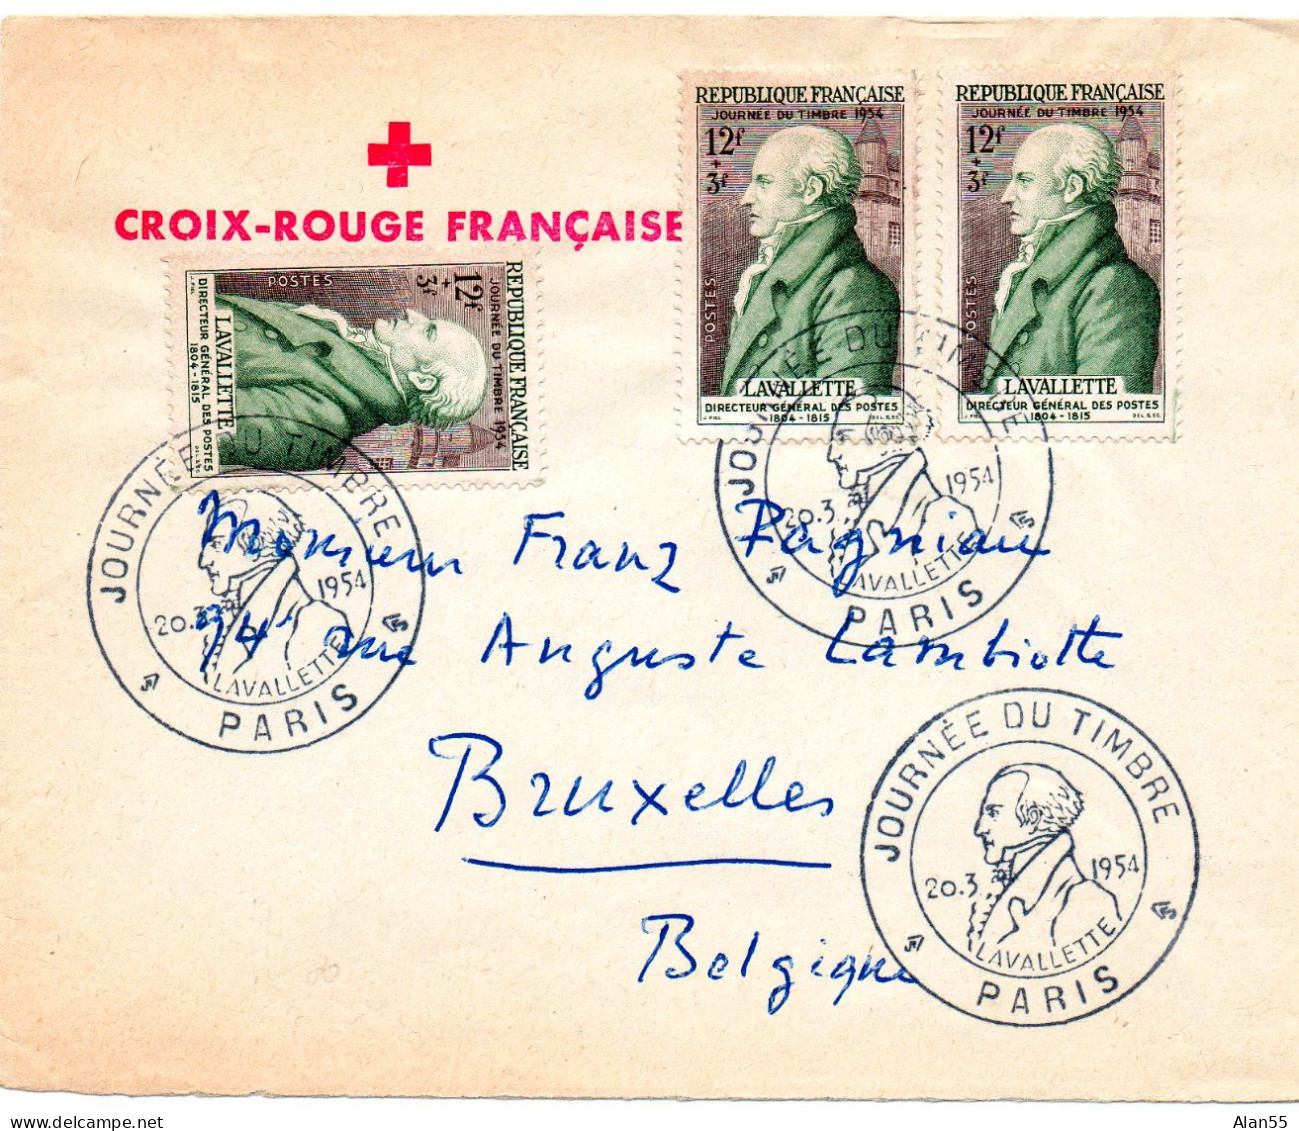 FRANCE.1954. "LAVALLETTE" .JOURNEE DU TIMBRE". LETTRE POUR LA BELGIQUE. - Stamp's Day